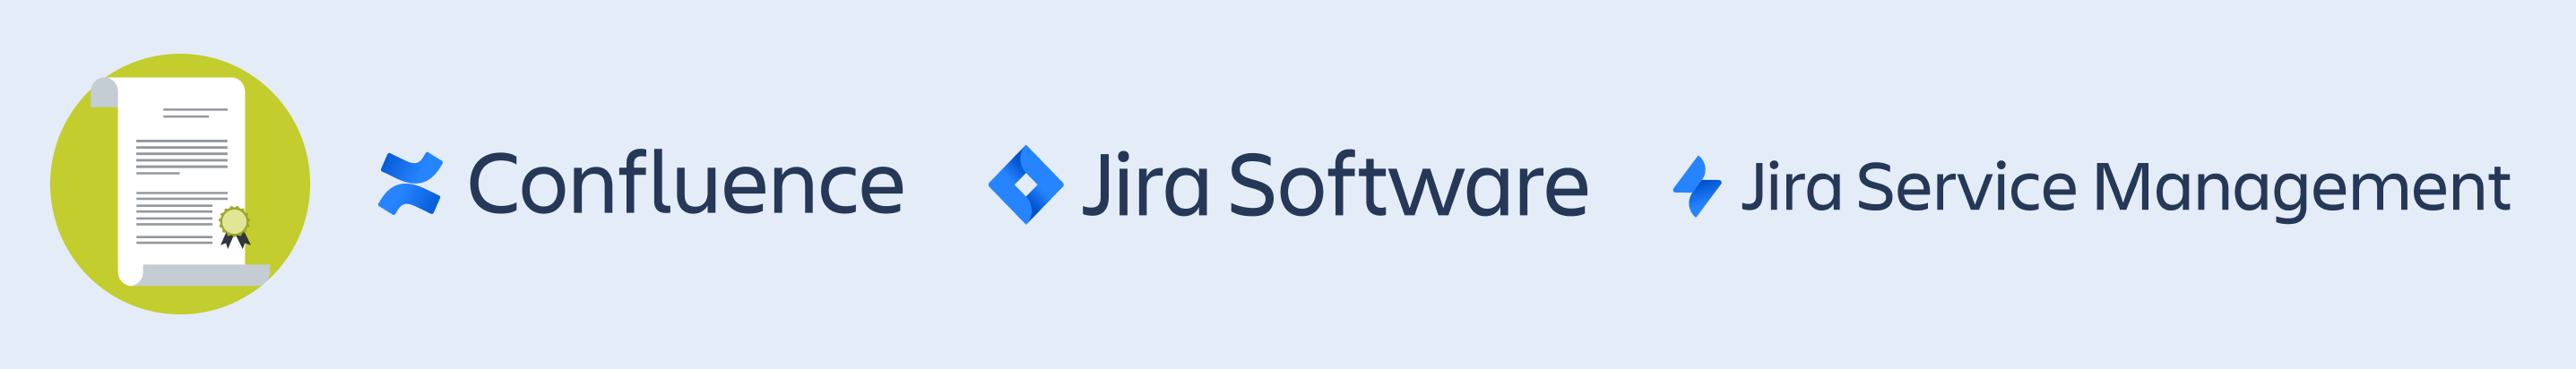 Wir bieten unabhängige Zertifizierungsschulungen für Confluence, Jira Software und Jira Service Management an.